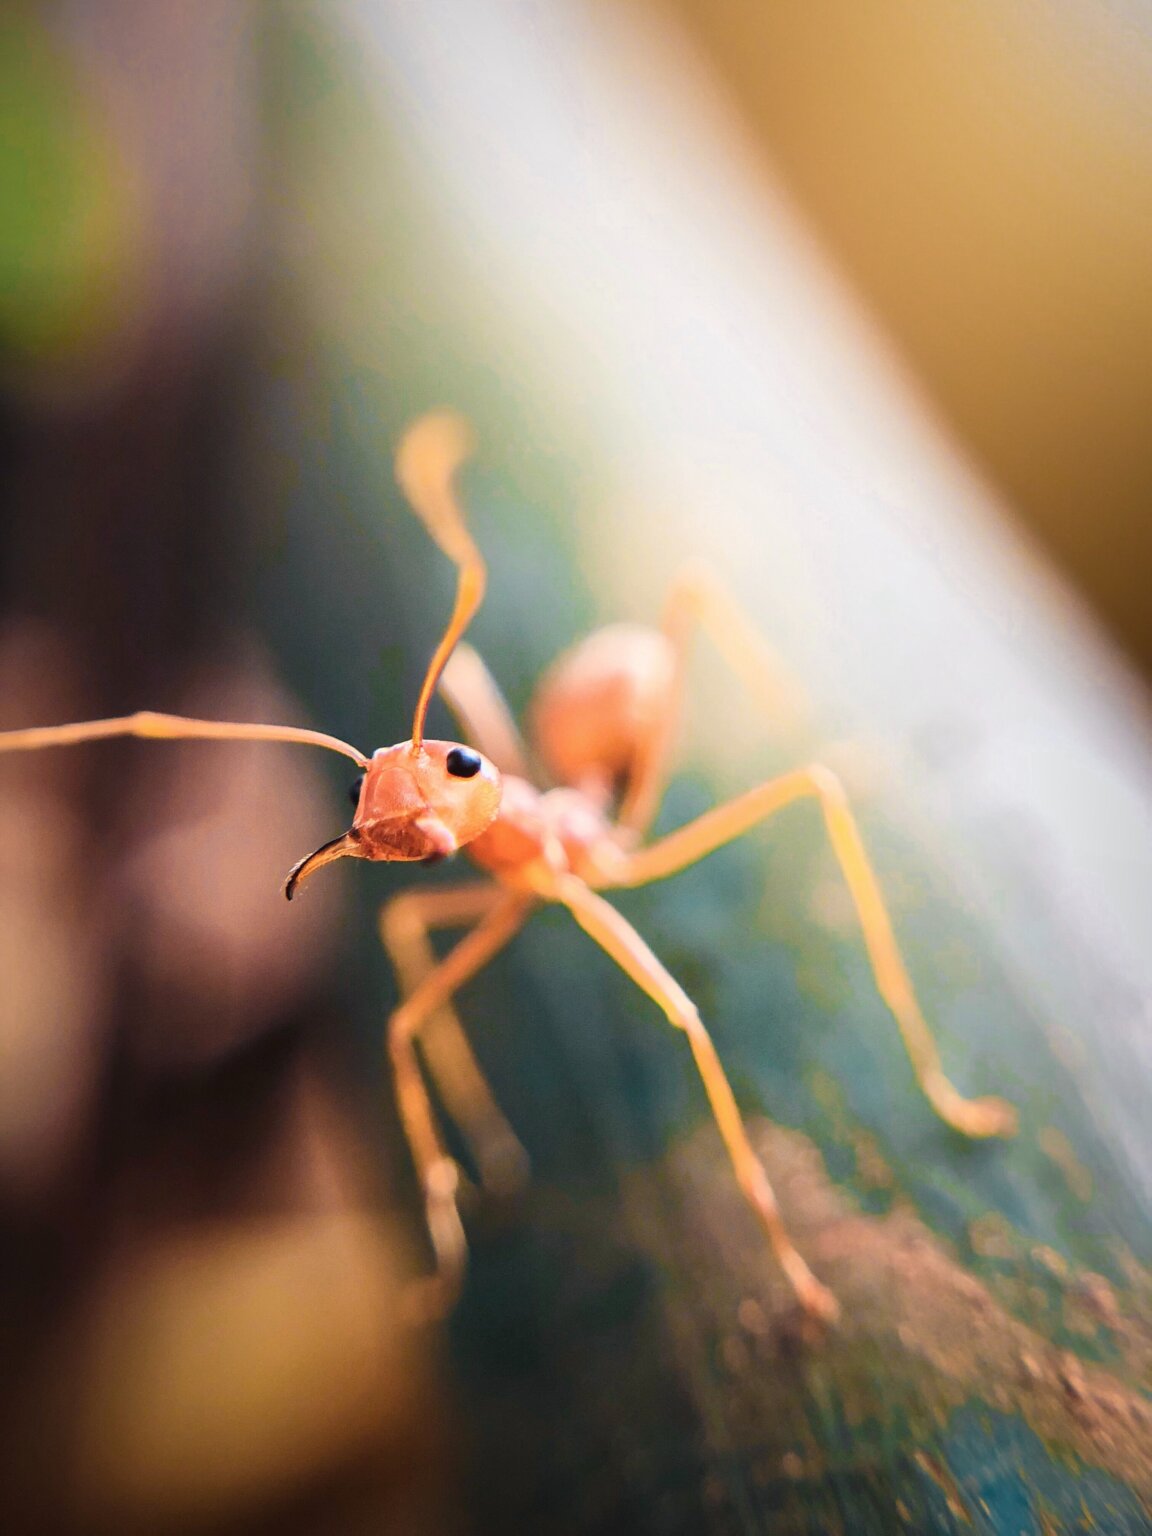 蟻 に 噛ま れ た チクチク 対処 法